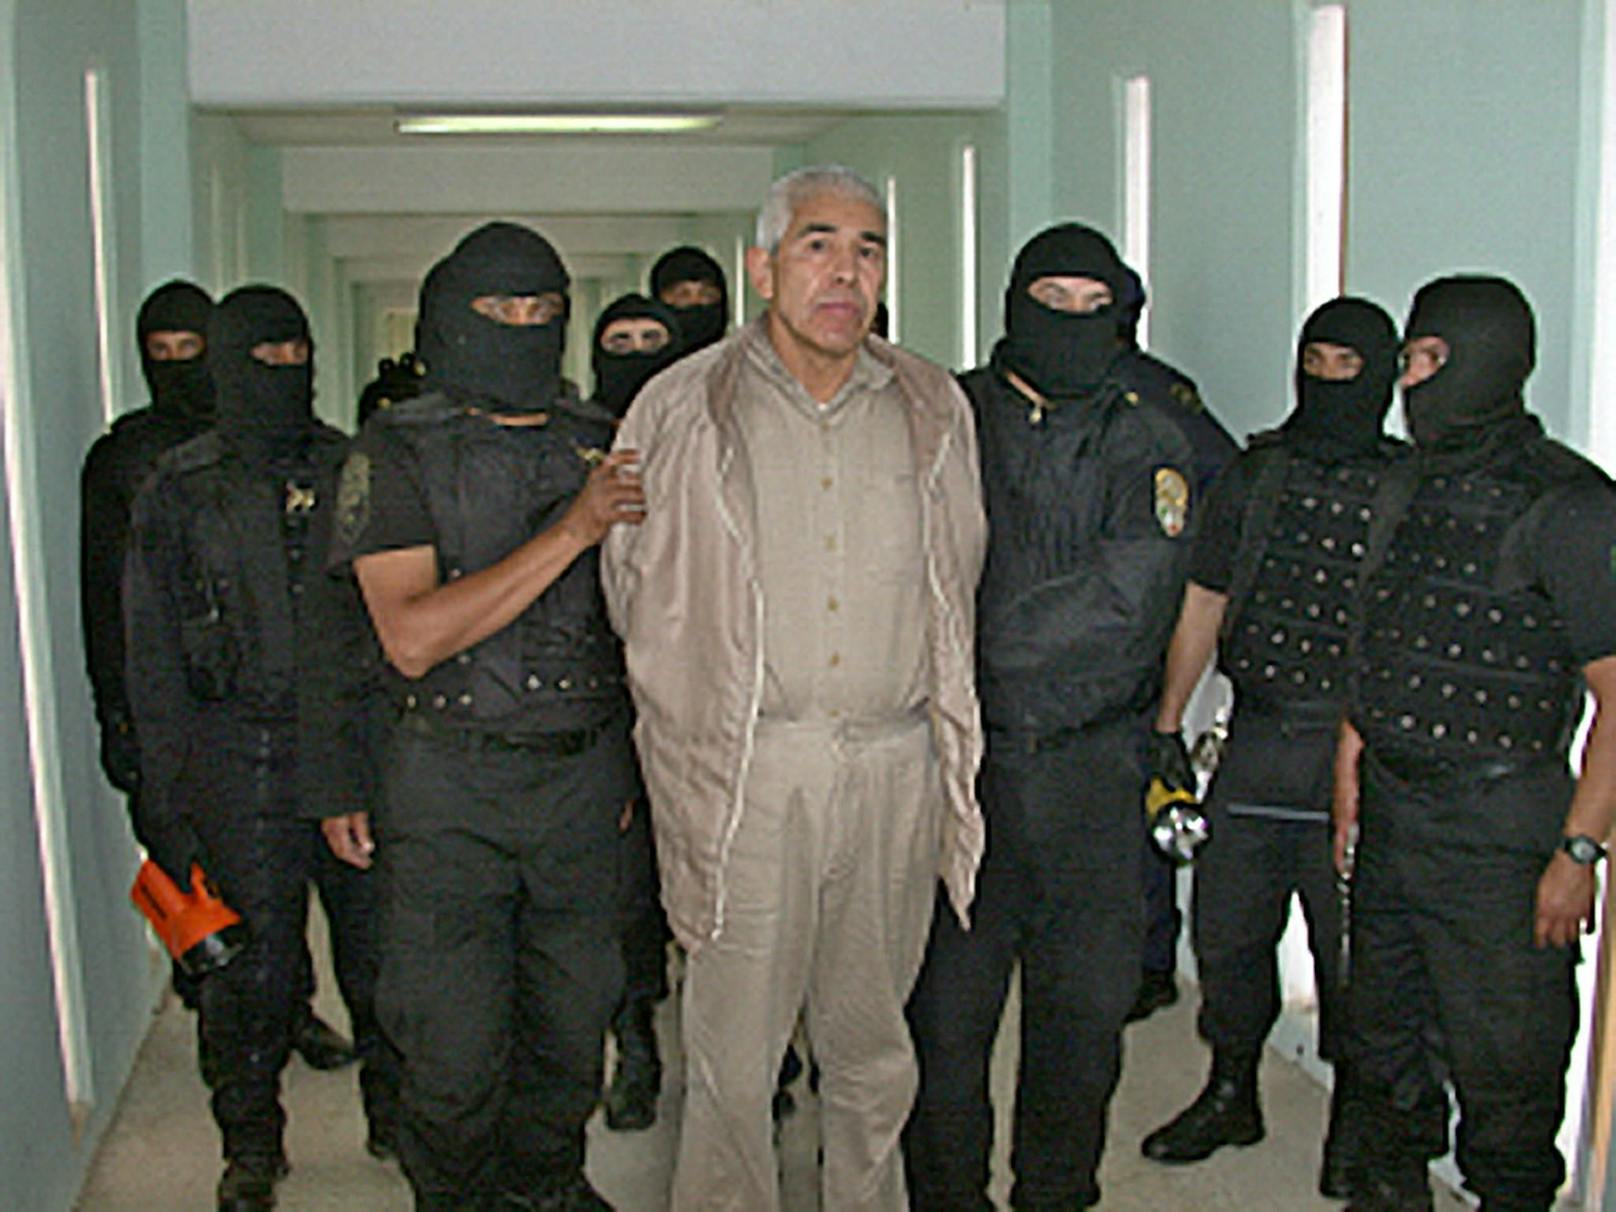 Schon 2005 wurde&nbsp;Caro Quintero festgenommen, es gelang ihm jedoch die Flucht in den Untergrund. (Archivbild)